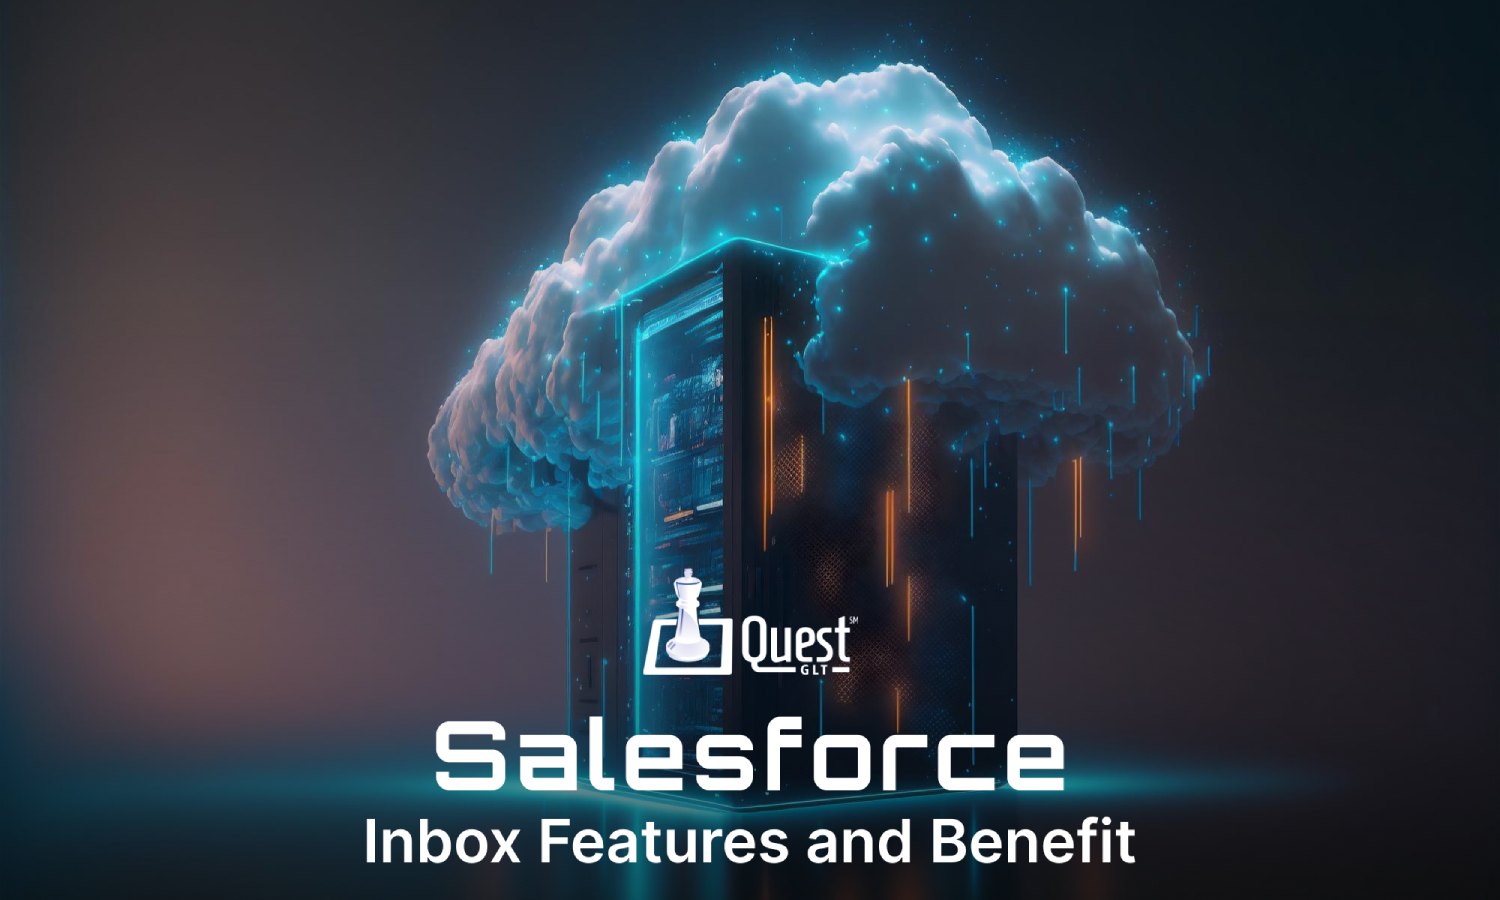 Salesforce Inbox Features and Benefits